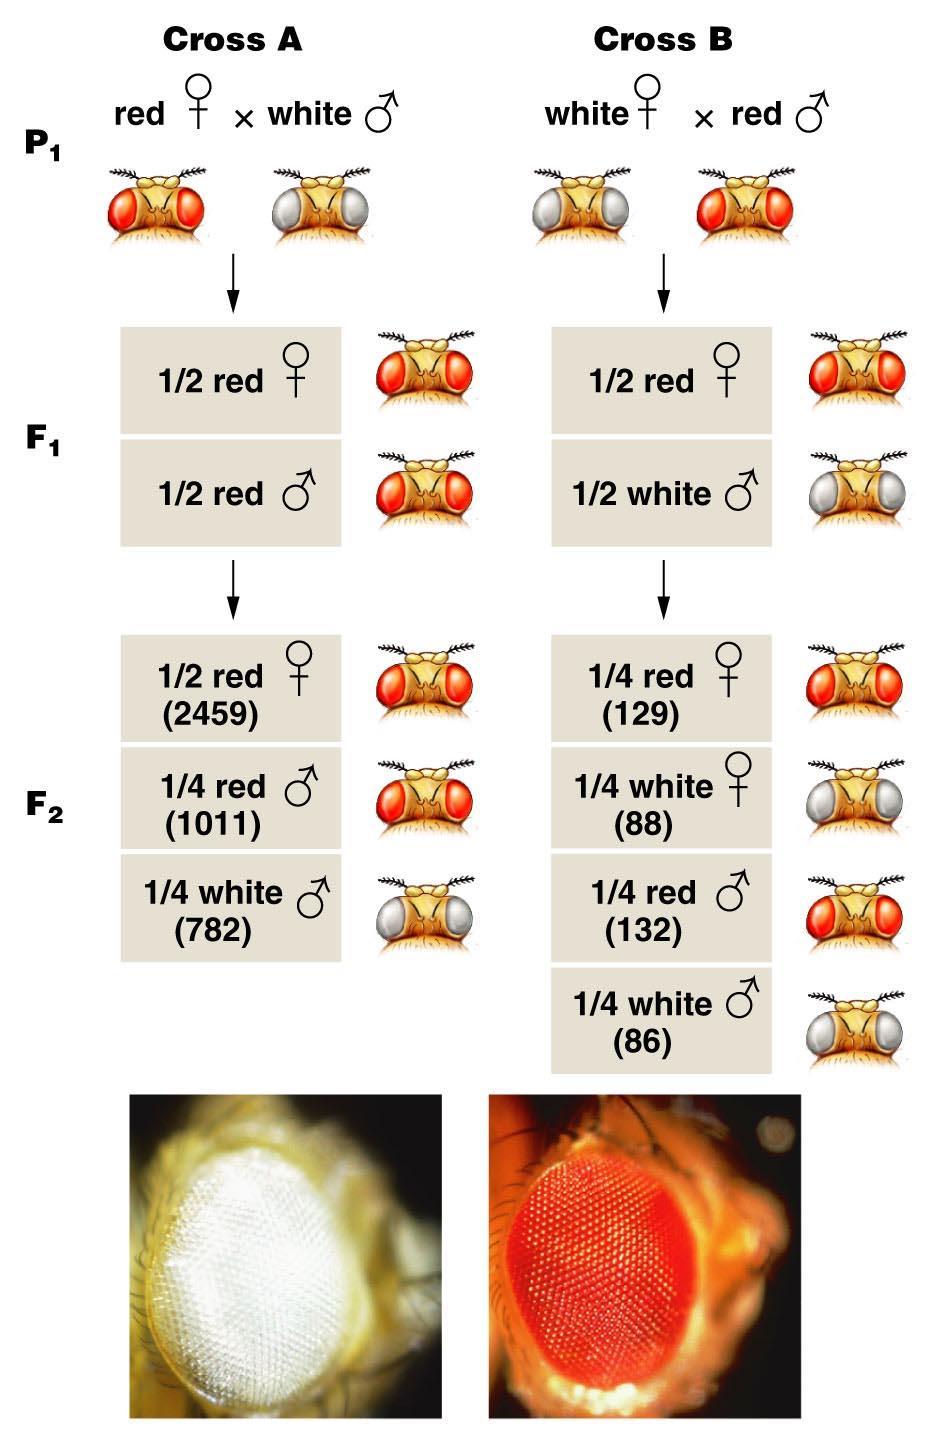 Bölüm 4.9 X-bağlantılı kalıtım Drosophila göz rengi Tanımlanan ilk X- bağlantılarından biridir.